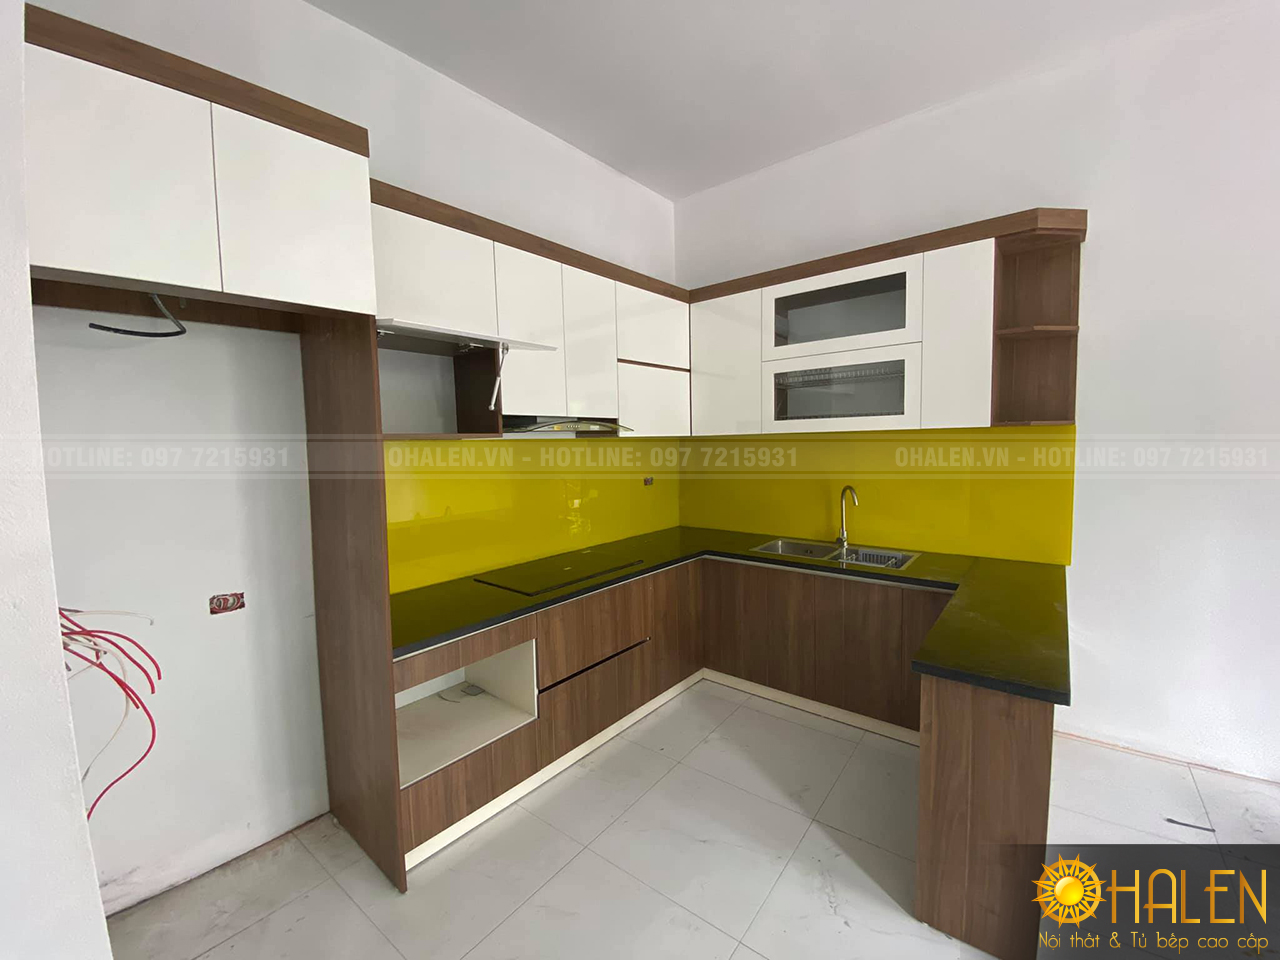 Mẫu tủ bếp Melamine đẹp ấn tượng với màu kính ốp bếp vàng chanh